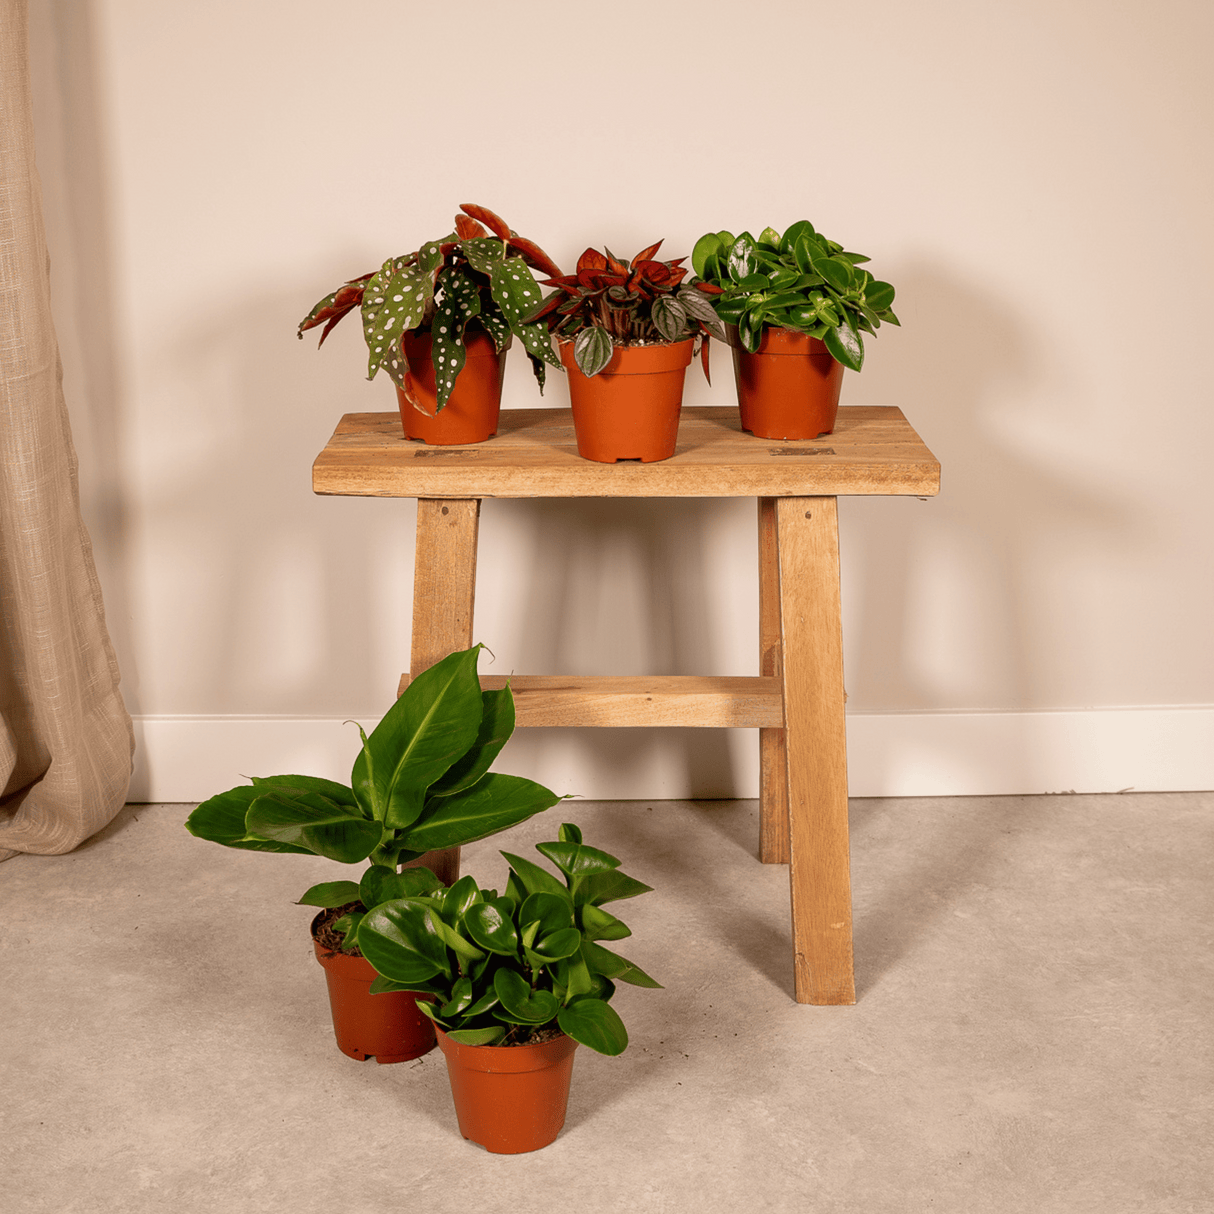 Box - Surprise indoor plants